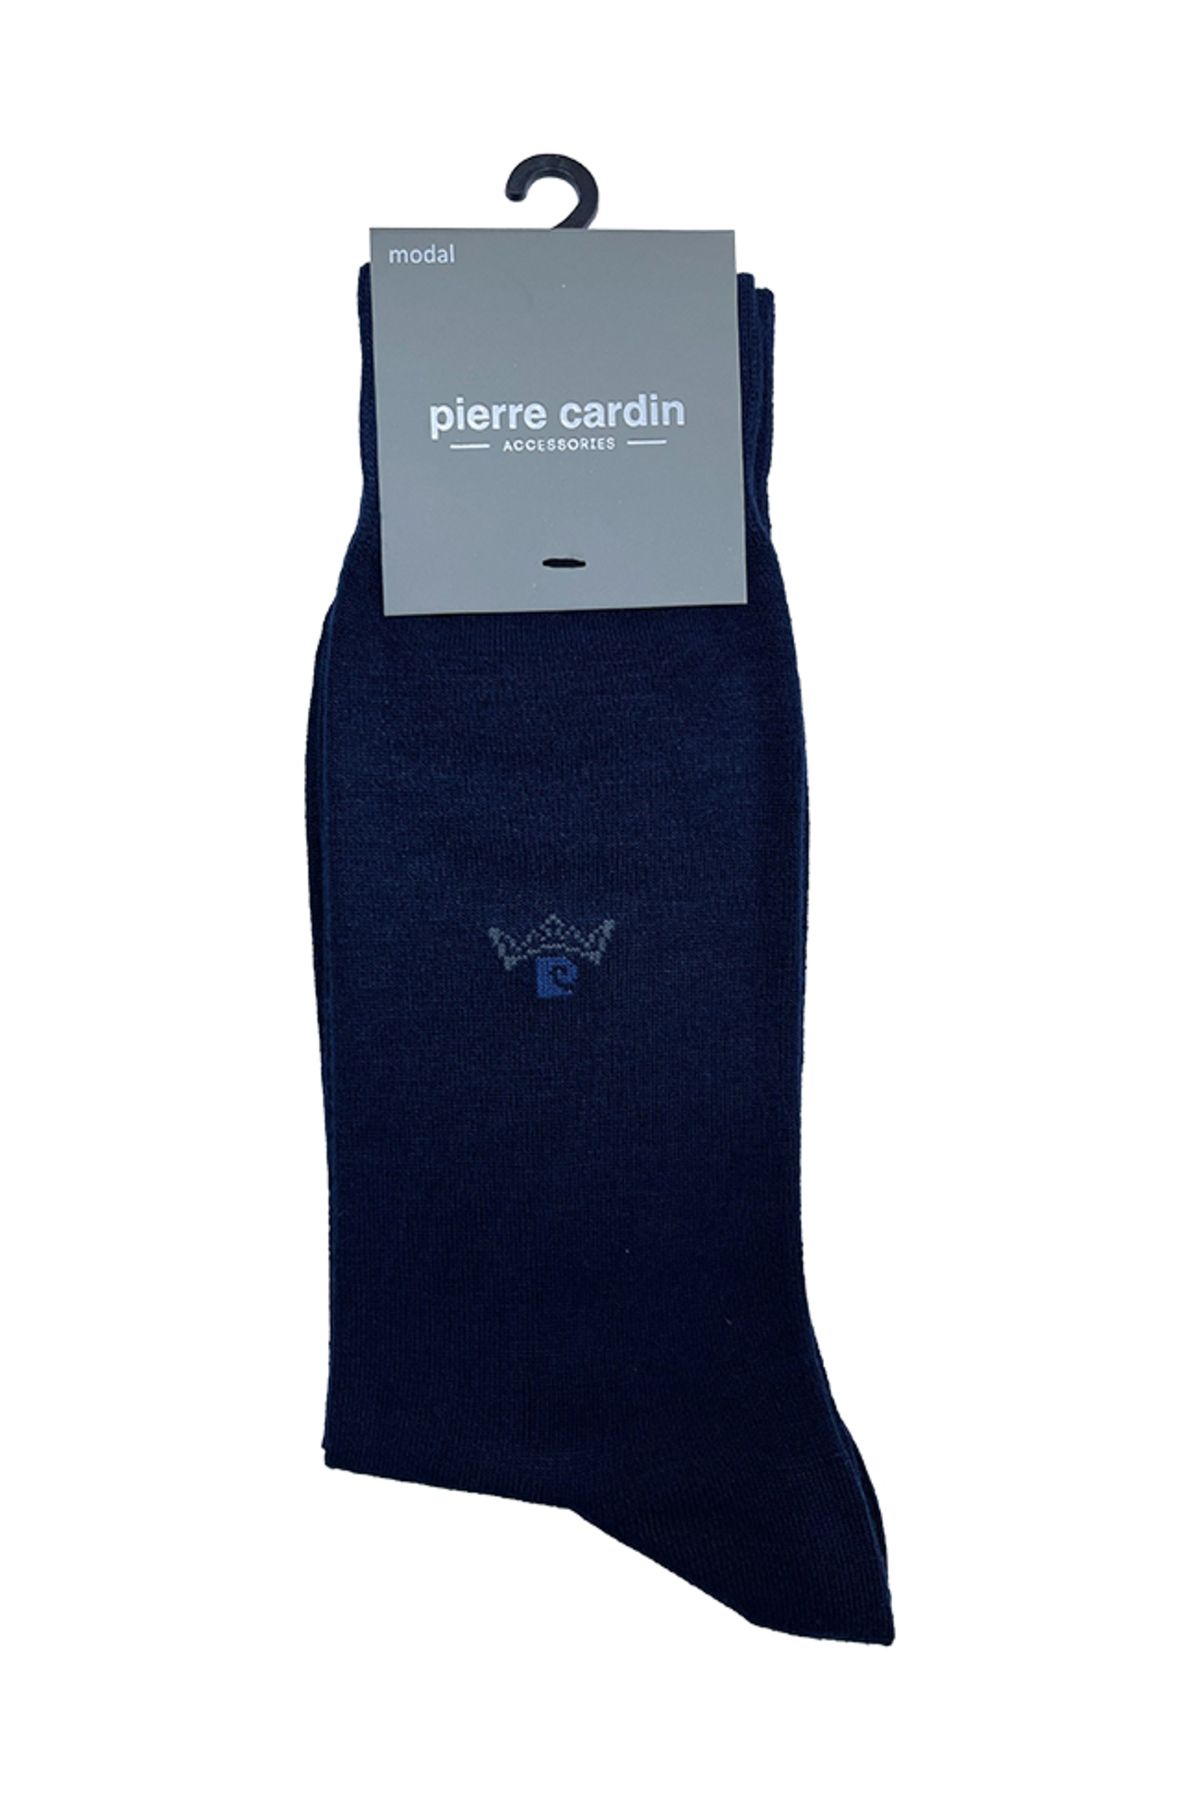 Pierre Cardin Plura Modal-Elastan Erkek Çorap